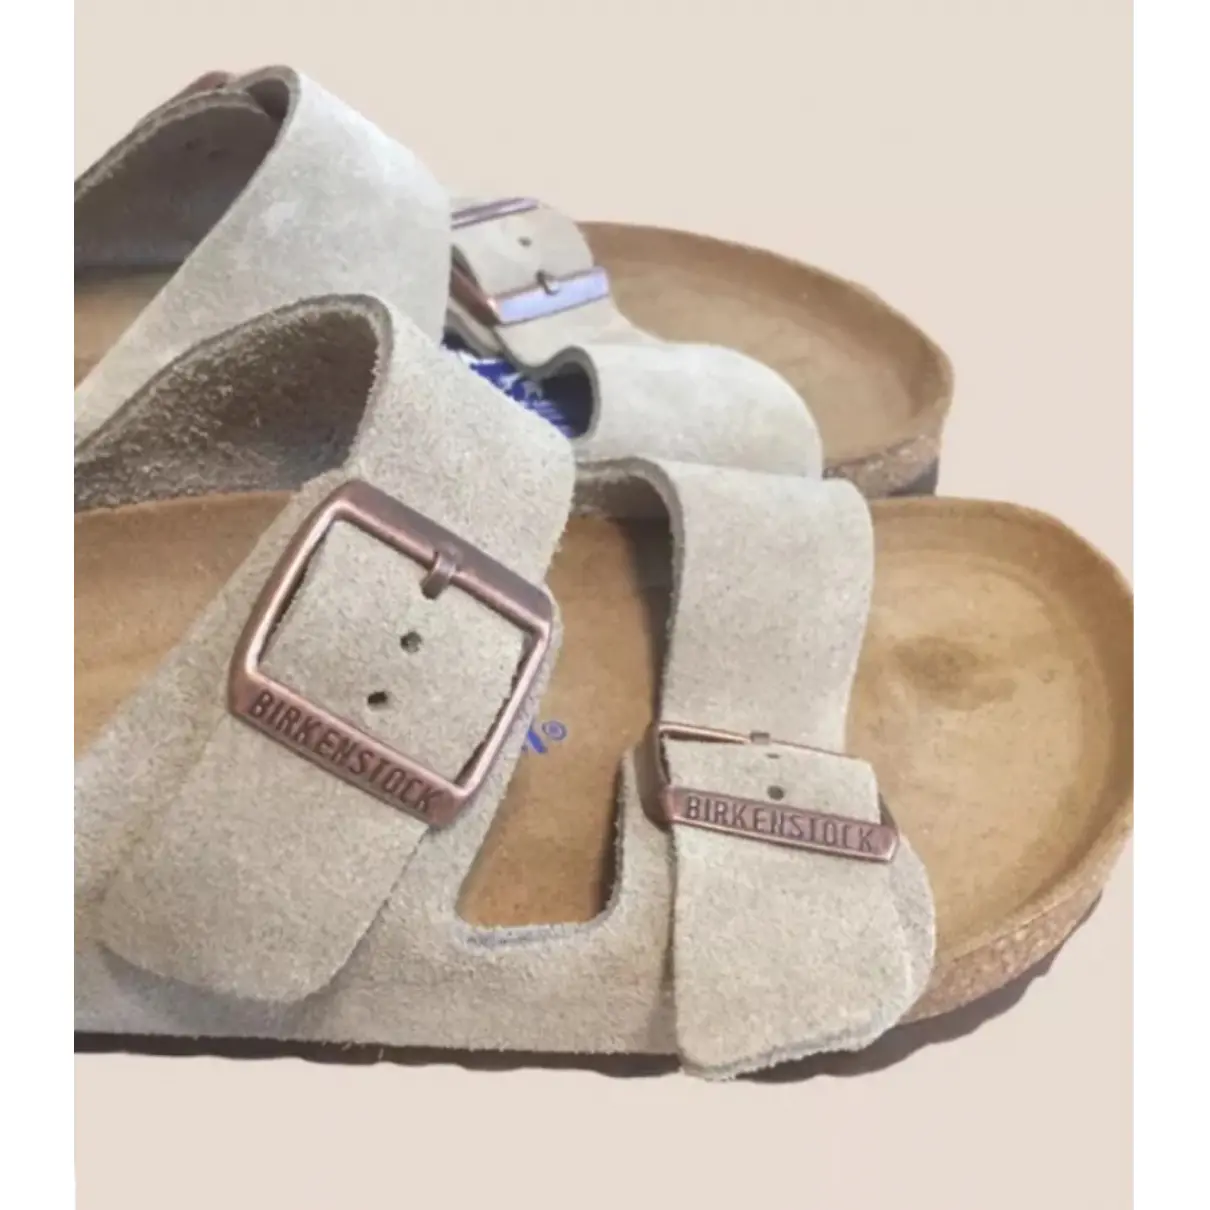 Buy Birkenstock Patent leather sandals online